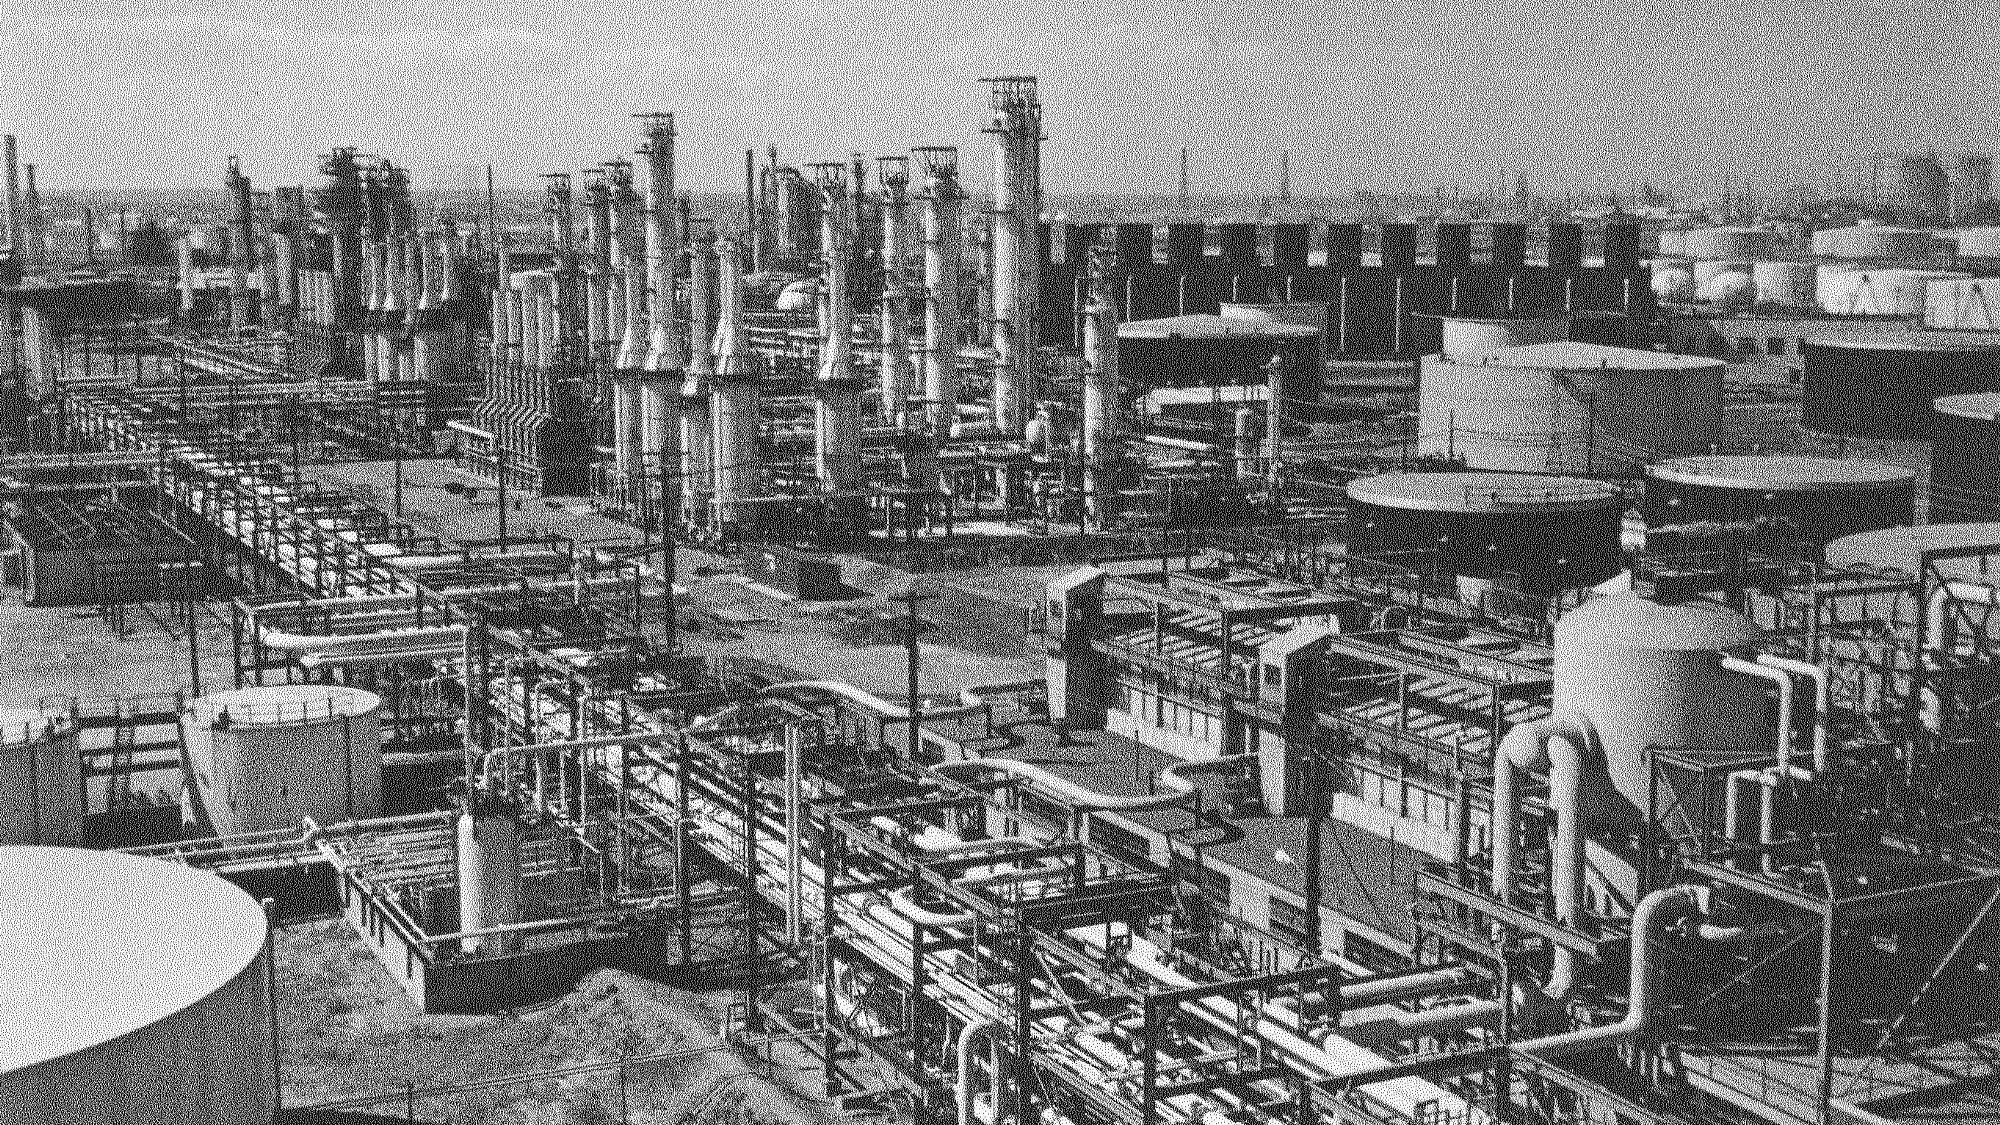 Gulf oil facility